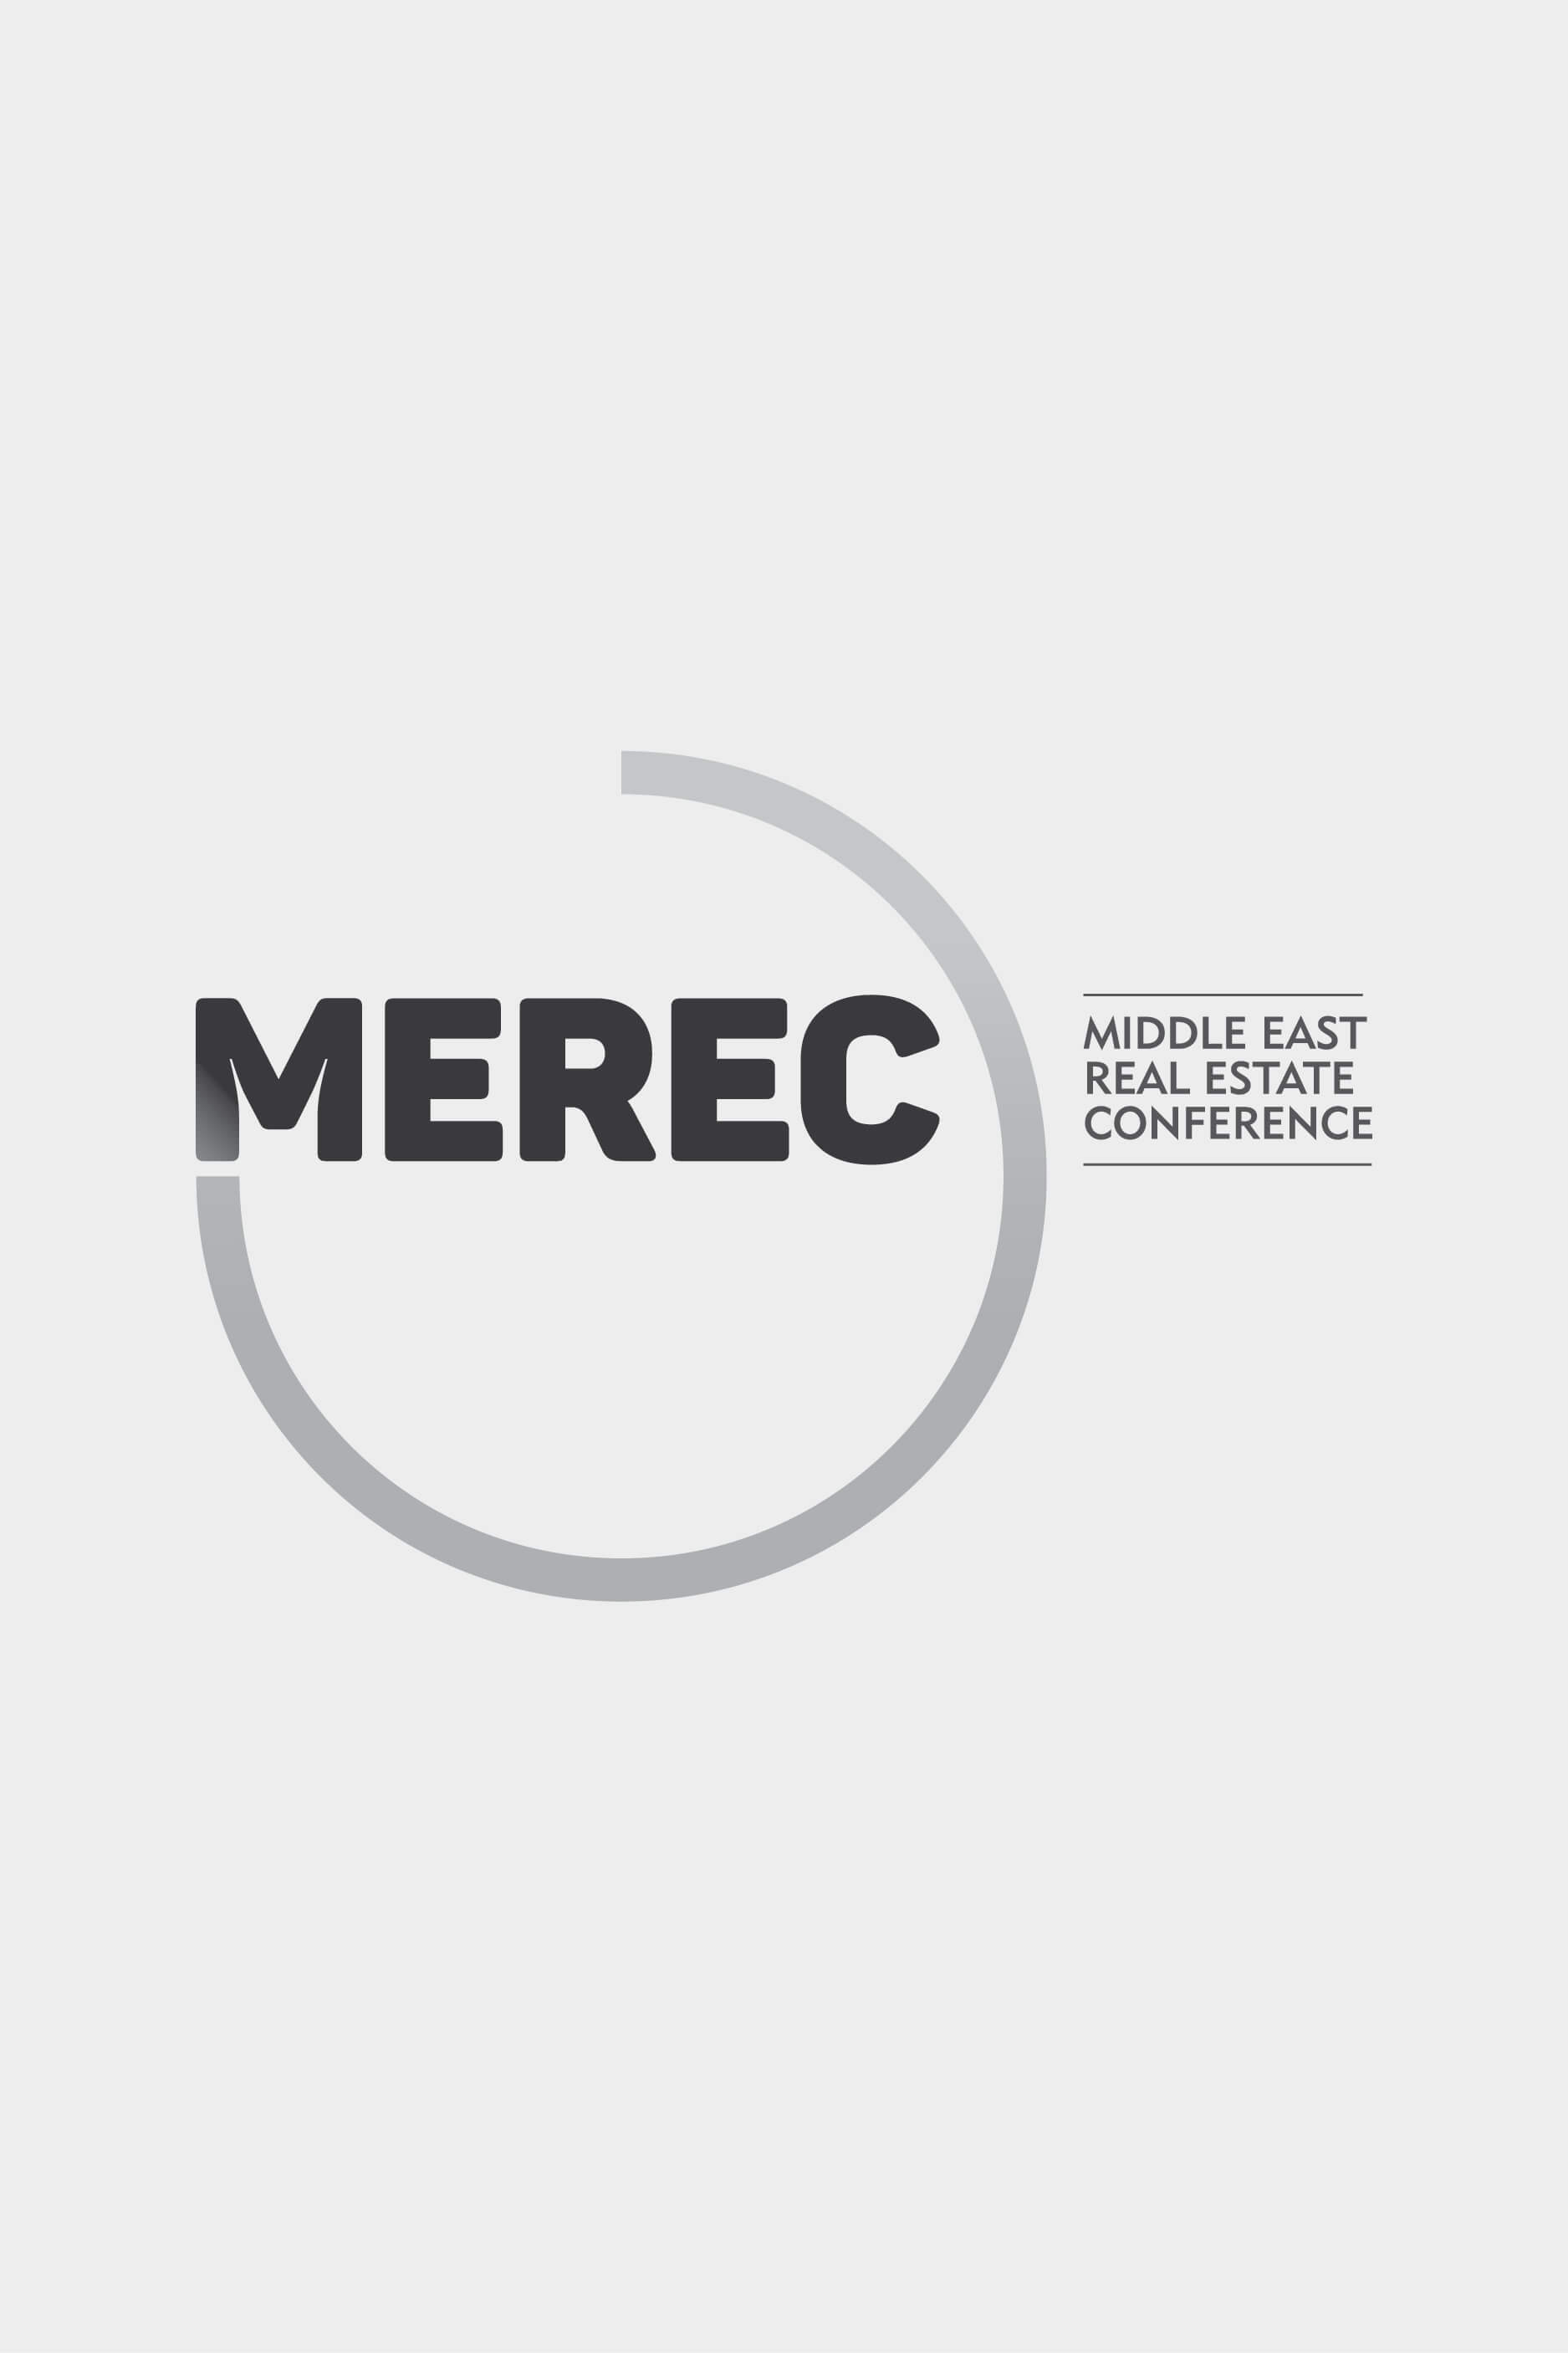 MEREC - Brand Identity